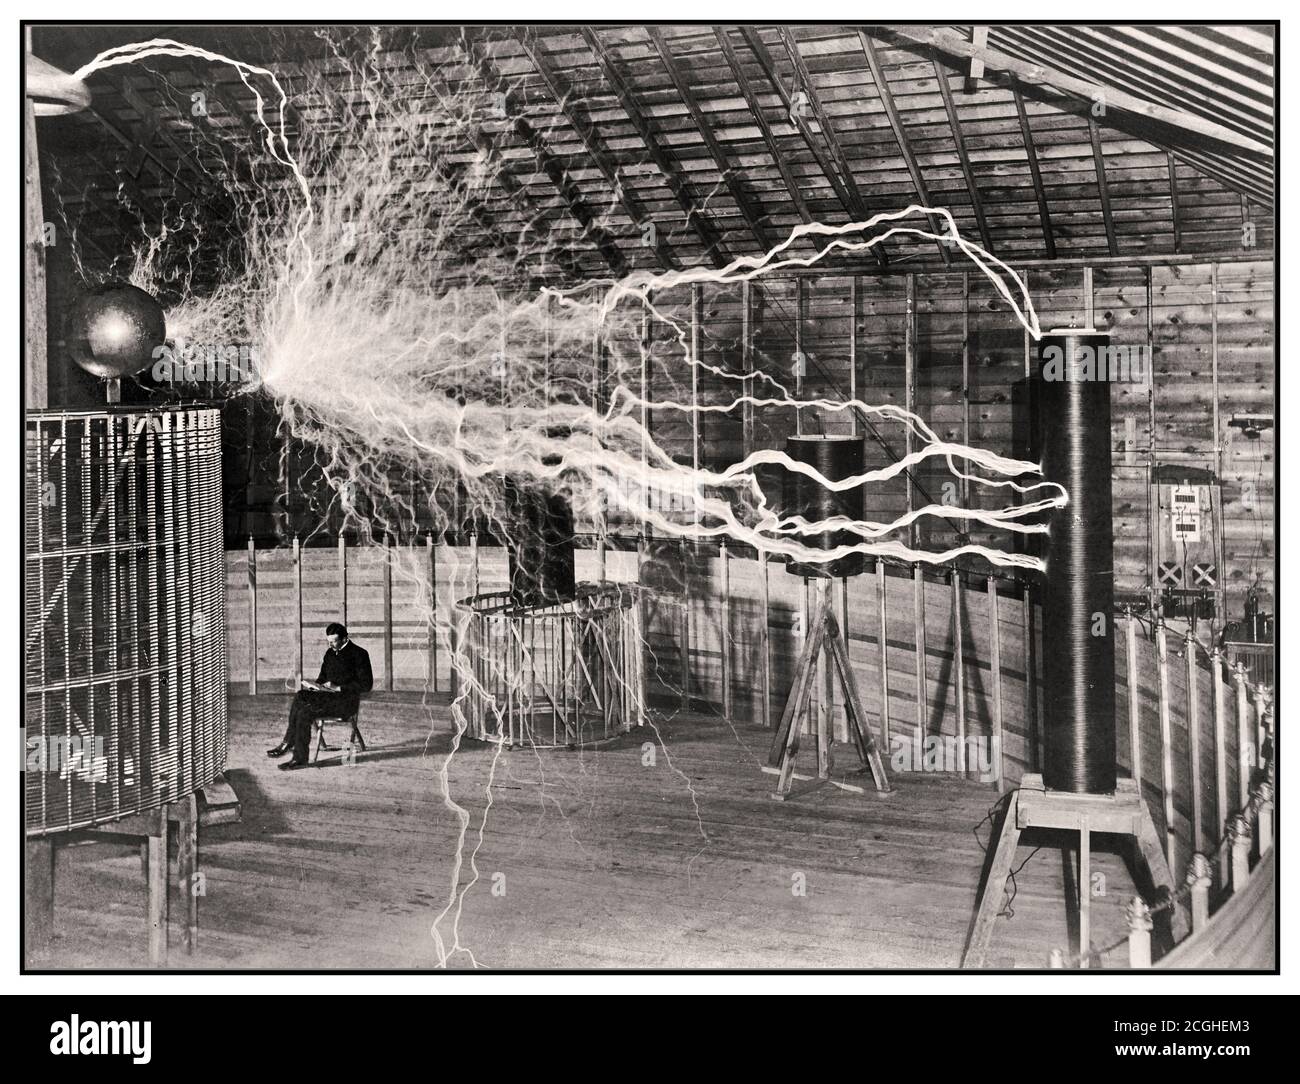 1899 Elektrizitätsexperiment Nikola Tesla serbisch-amerikanischer Erfinder in seinem Labor in Colorado Springs Dezember 1899, scheinbar sitzend neben seinem riesigen 'agnifying Transmitter' Hochspannungsgenerator, während die Maschine riesige Strombolzen produzierte. Es war ein Trick Foto von Fotograf Dickenson V. Alley; eine doppelte Belichtung. Zuerst wurden die riesigen Funken der Maschine im abgedunkelten Raum fotografiert, dann wurde die Fotoplatte bei ausgeschaltetem Gerät und Tesla im Stuhl wieder belichtet. Tesla gab zu, dass das Foto falsch ist, aber es erhielt die große Aufmerksamkeit, die er wollte. Stockfoto